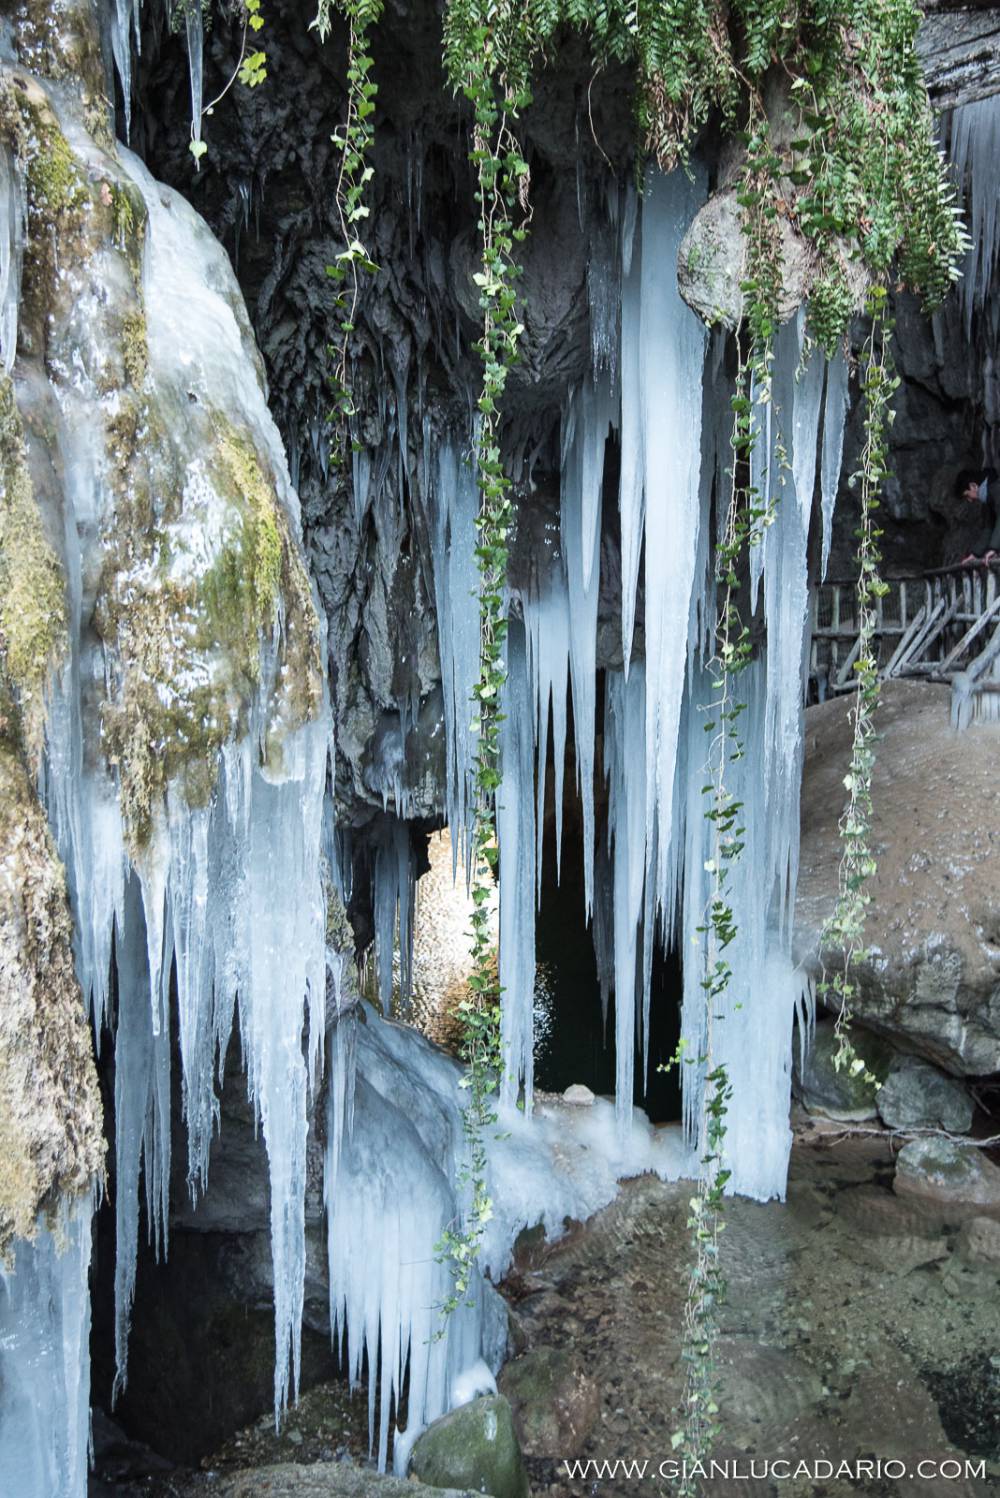 Le grotte del Caglieron in versione invernale - foto 5 - Gianluca Dario Photography